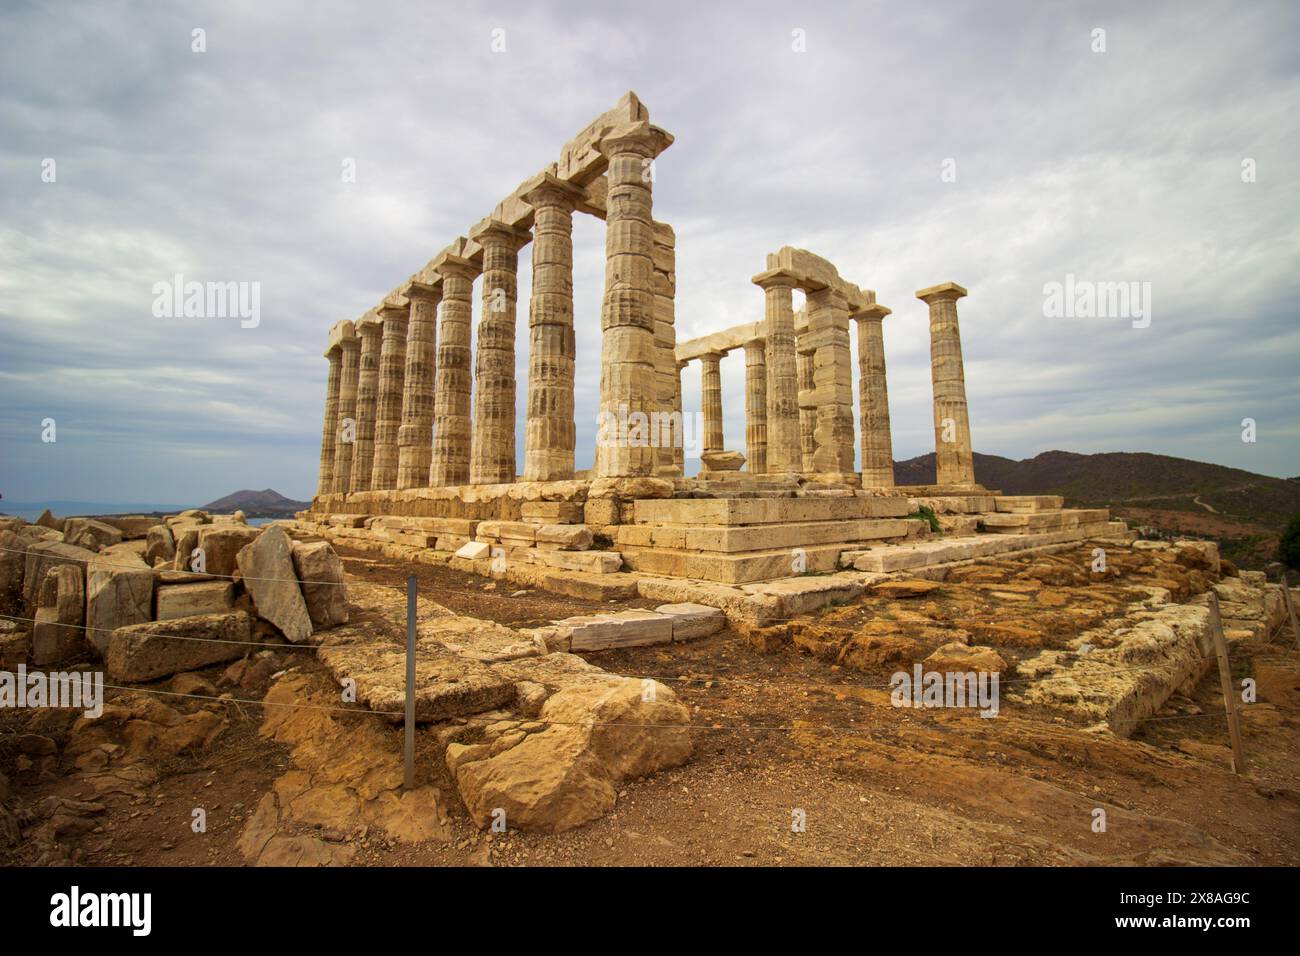 Les ruines du temple grec ancien se trouvent sous un ciel nuageux avec des paysages spectaculaires et des restes de colonnes Banque D'Images